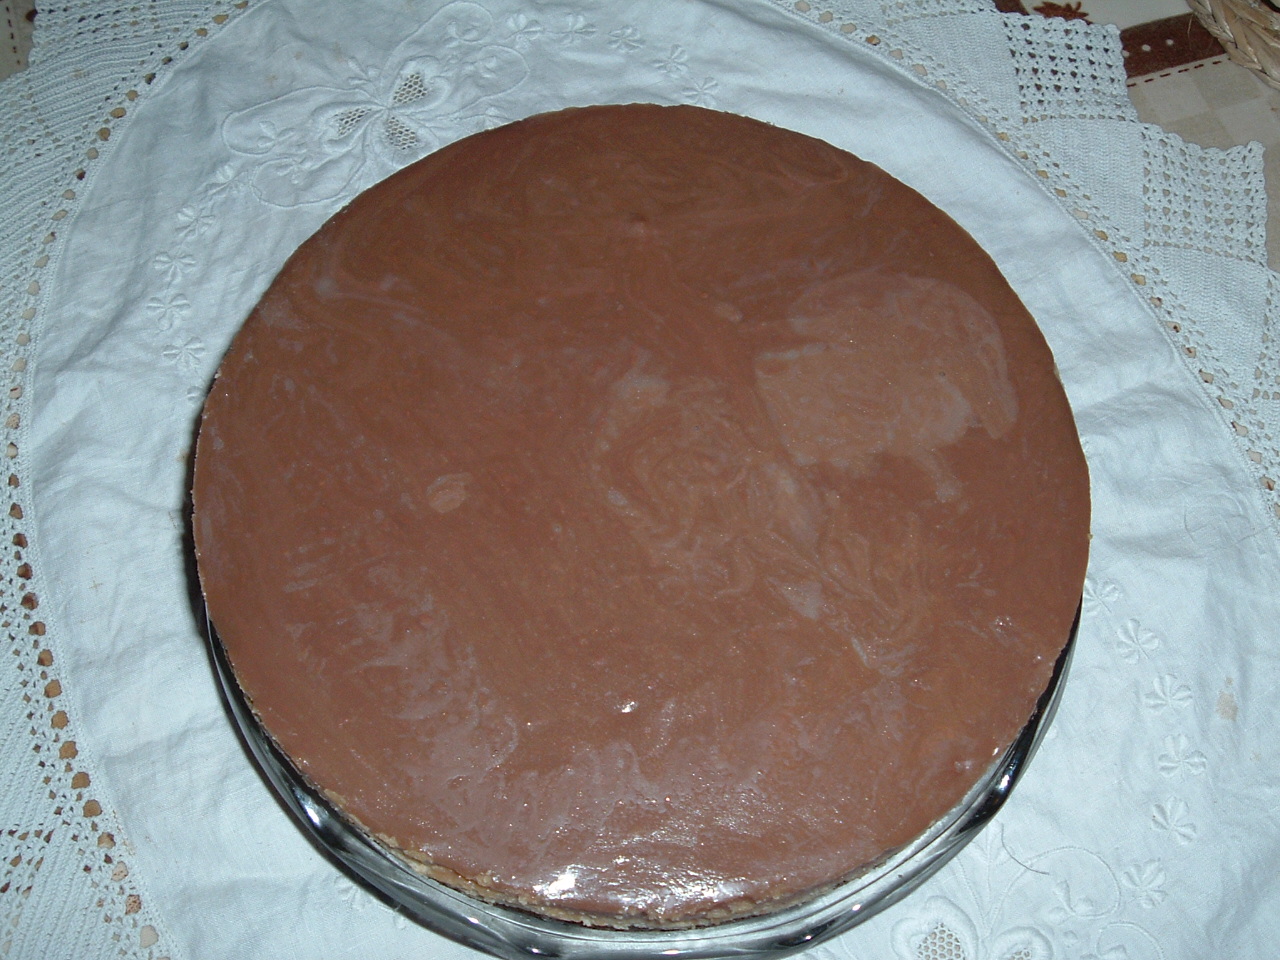 Peanut and chocolate tart